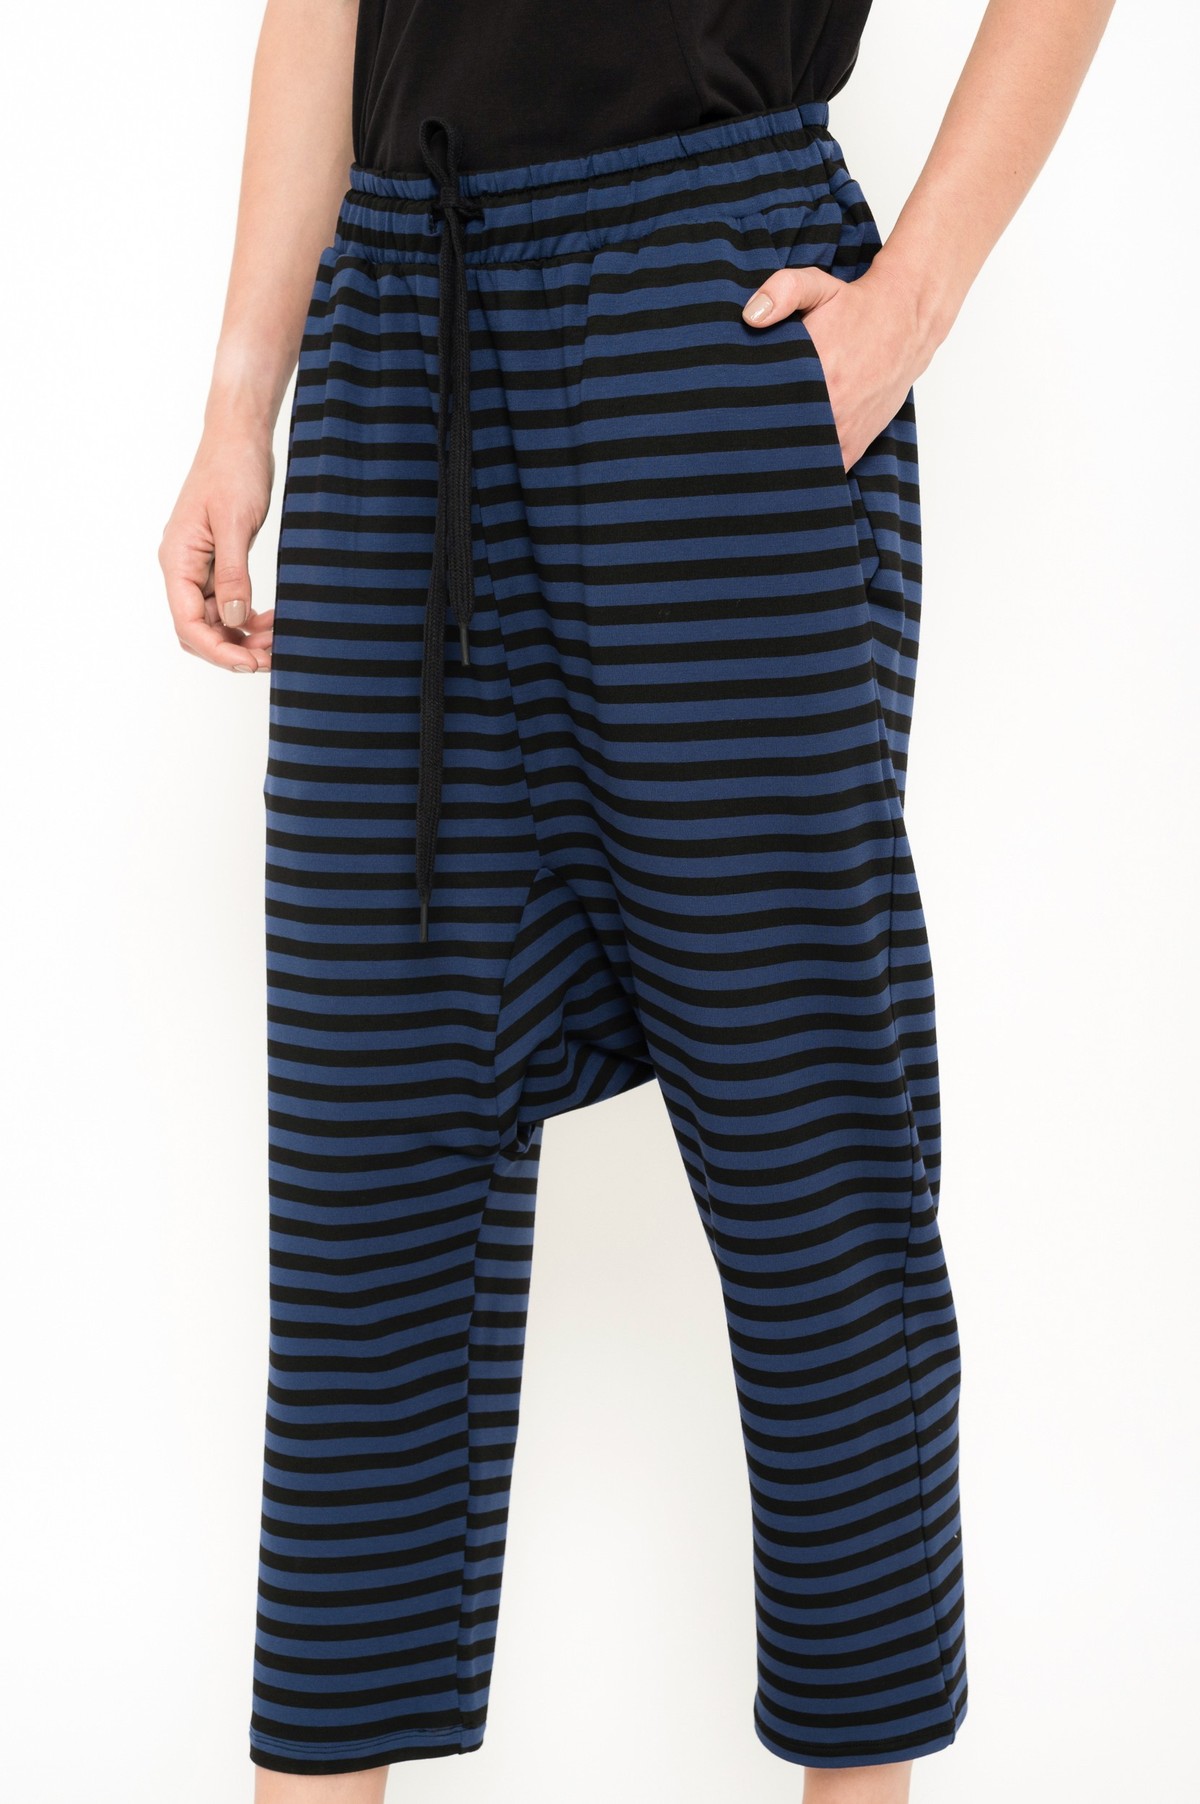 calça gancho baixo em moletom listrado | low-rise striped sweatpants